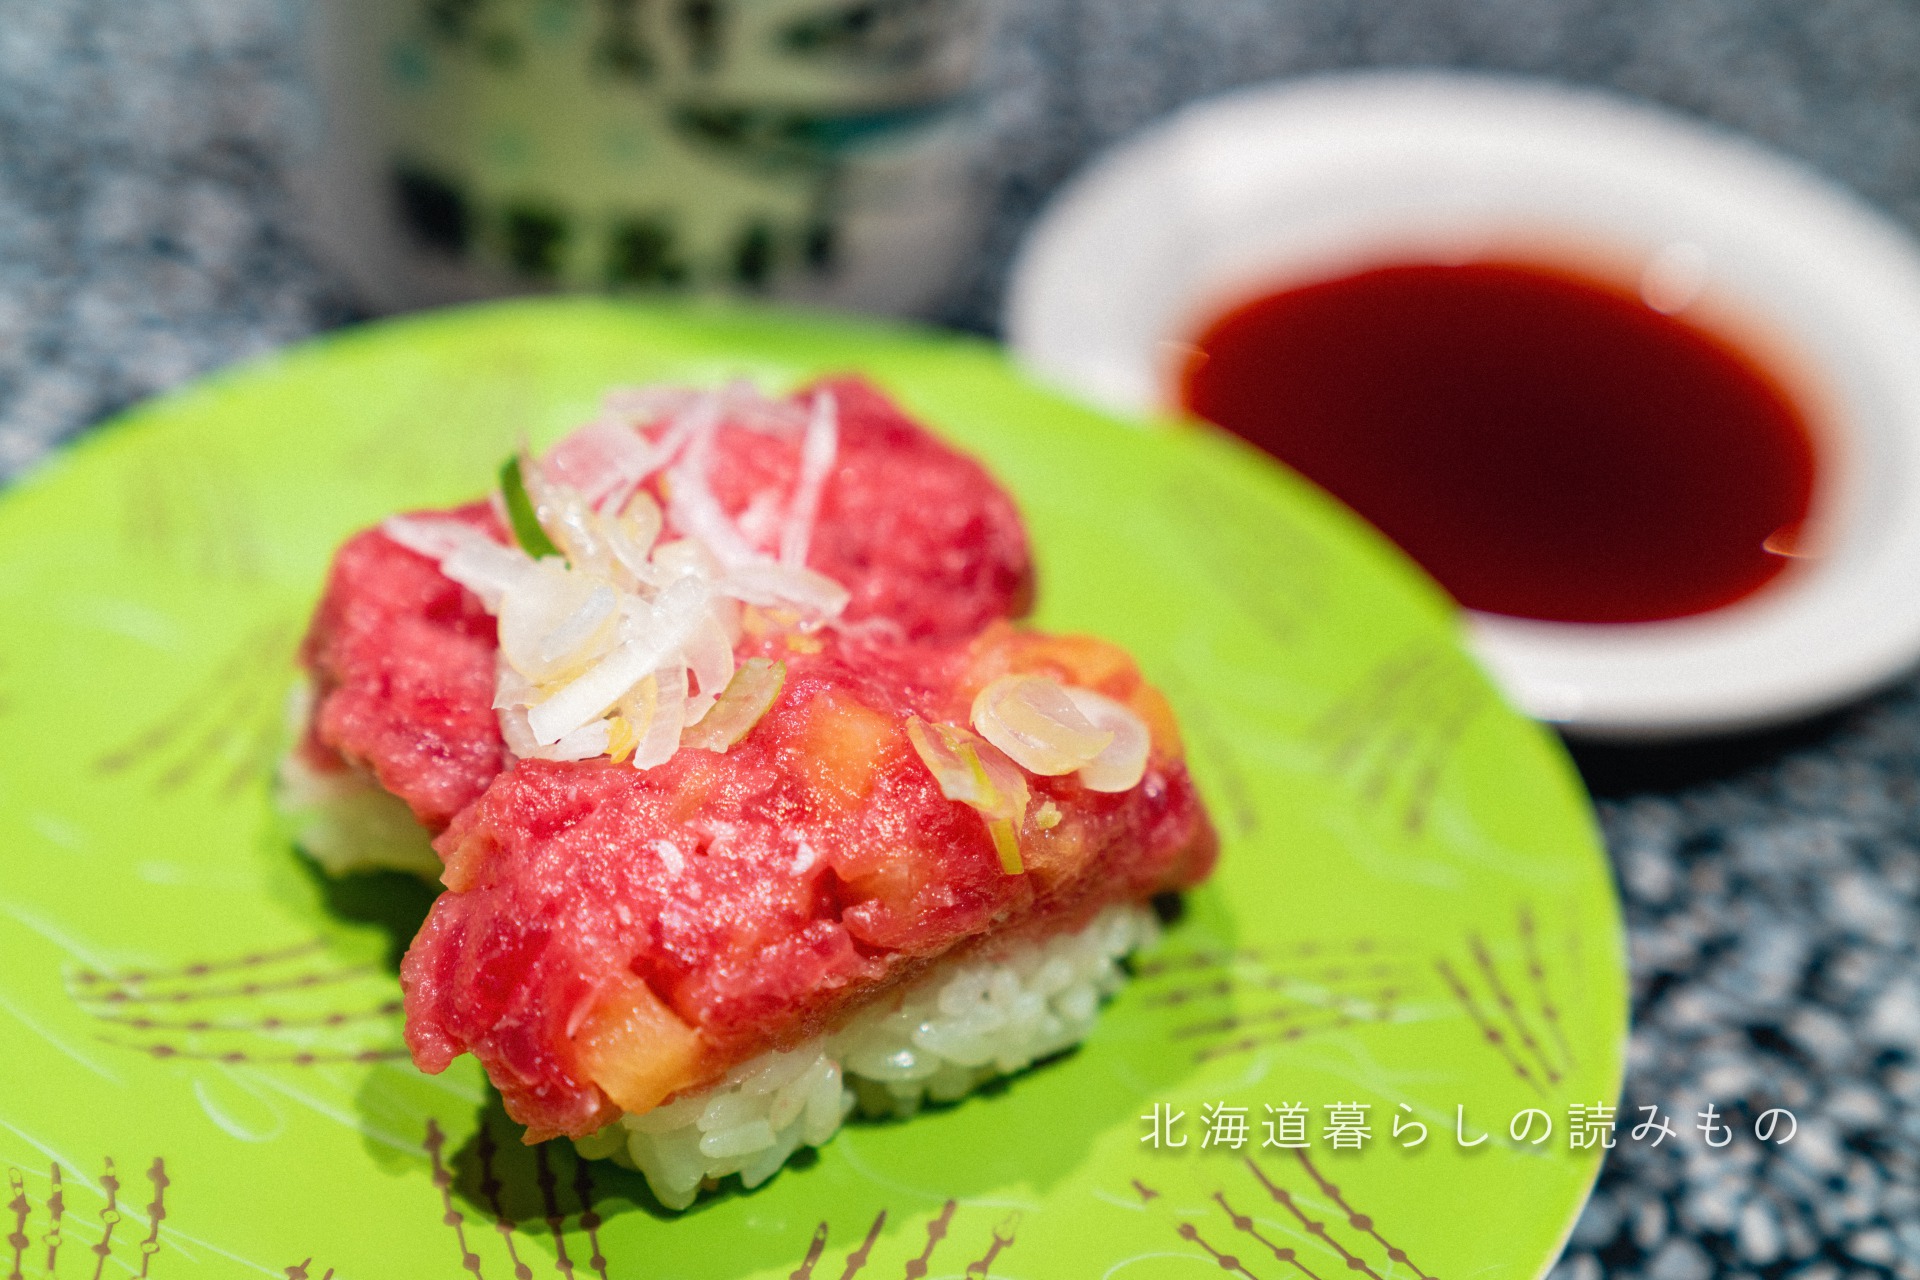 迴轉壽司根室花丸的菜單上的「金槍魚日式泽庵黄萝卜」